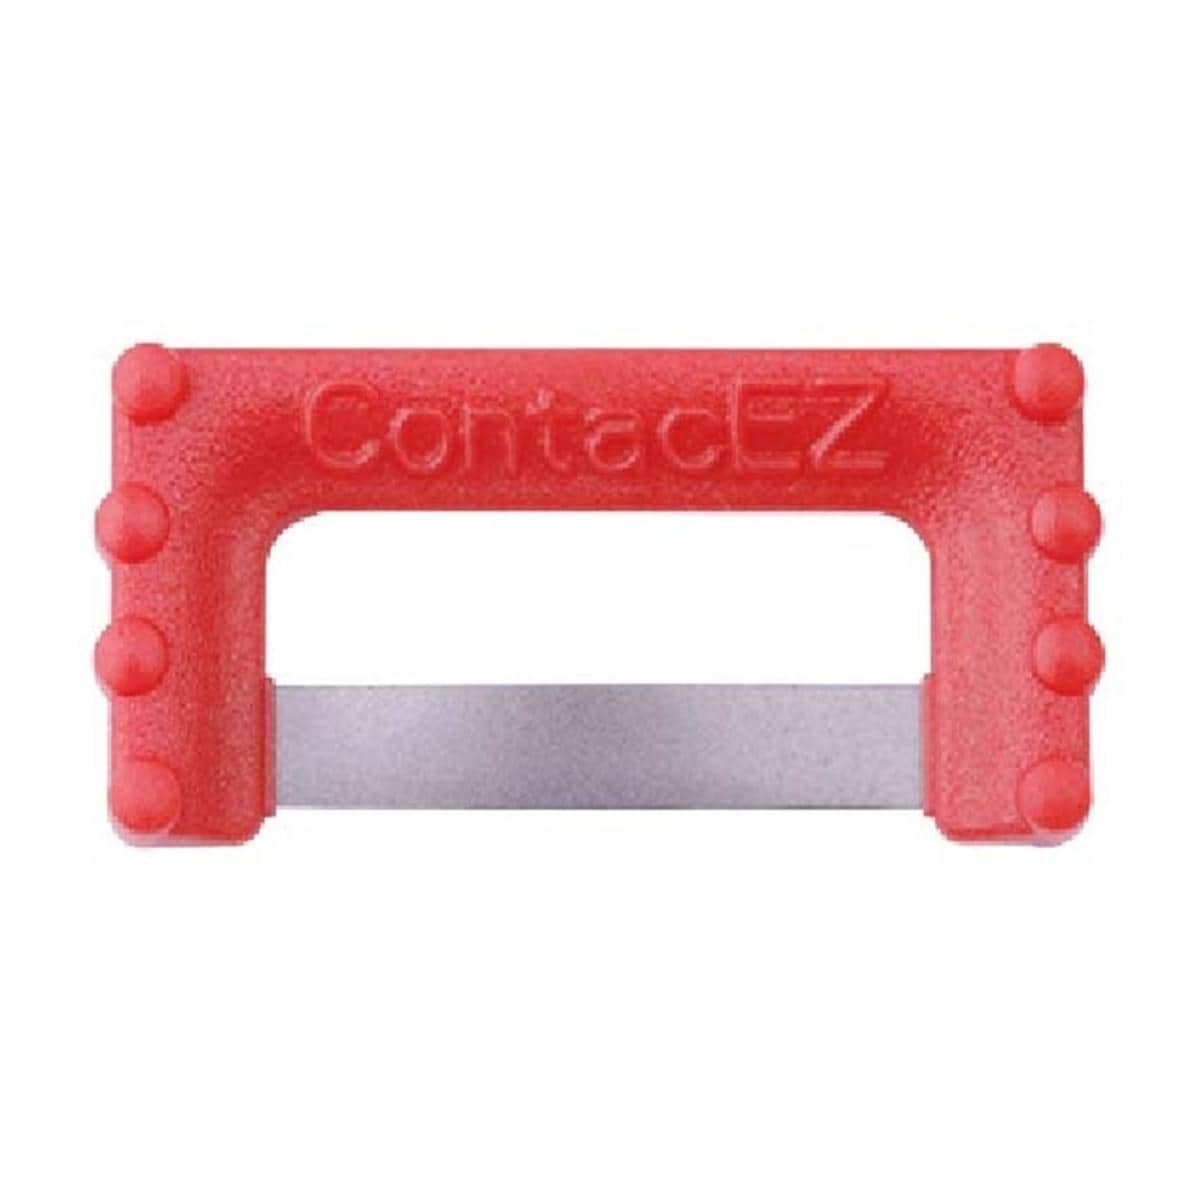 ContacEZ IPR - recharge - REF. 32432 - rouge 0,12mm, 32 pcs